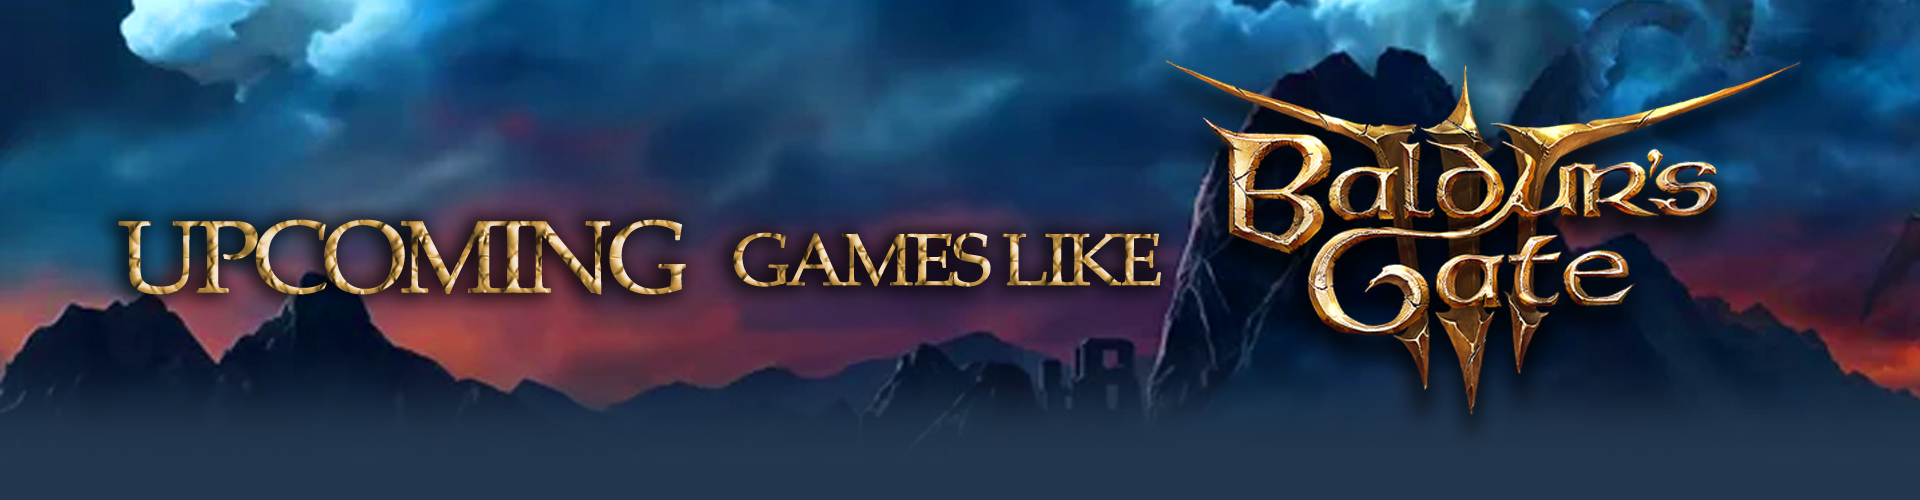 Los próximos juegos de Dark Fantasy como Baldur's Gate 3